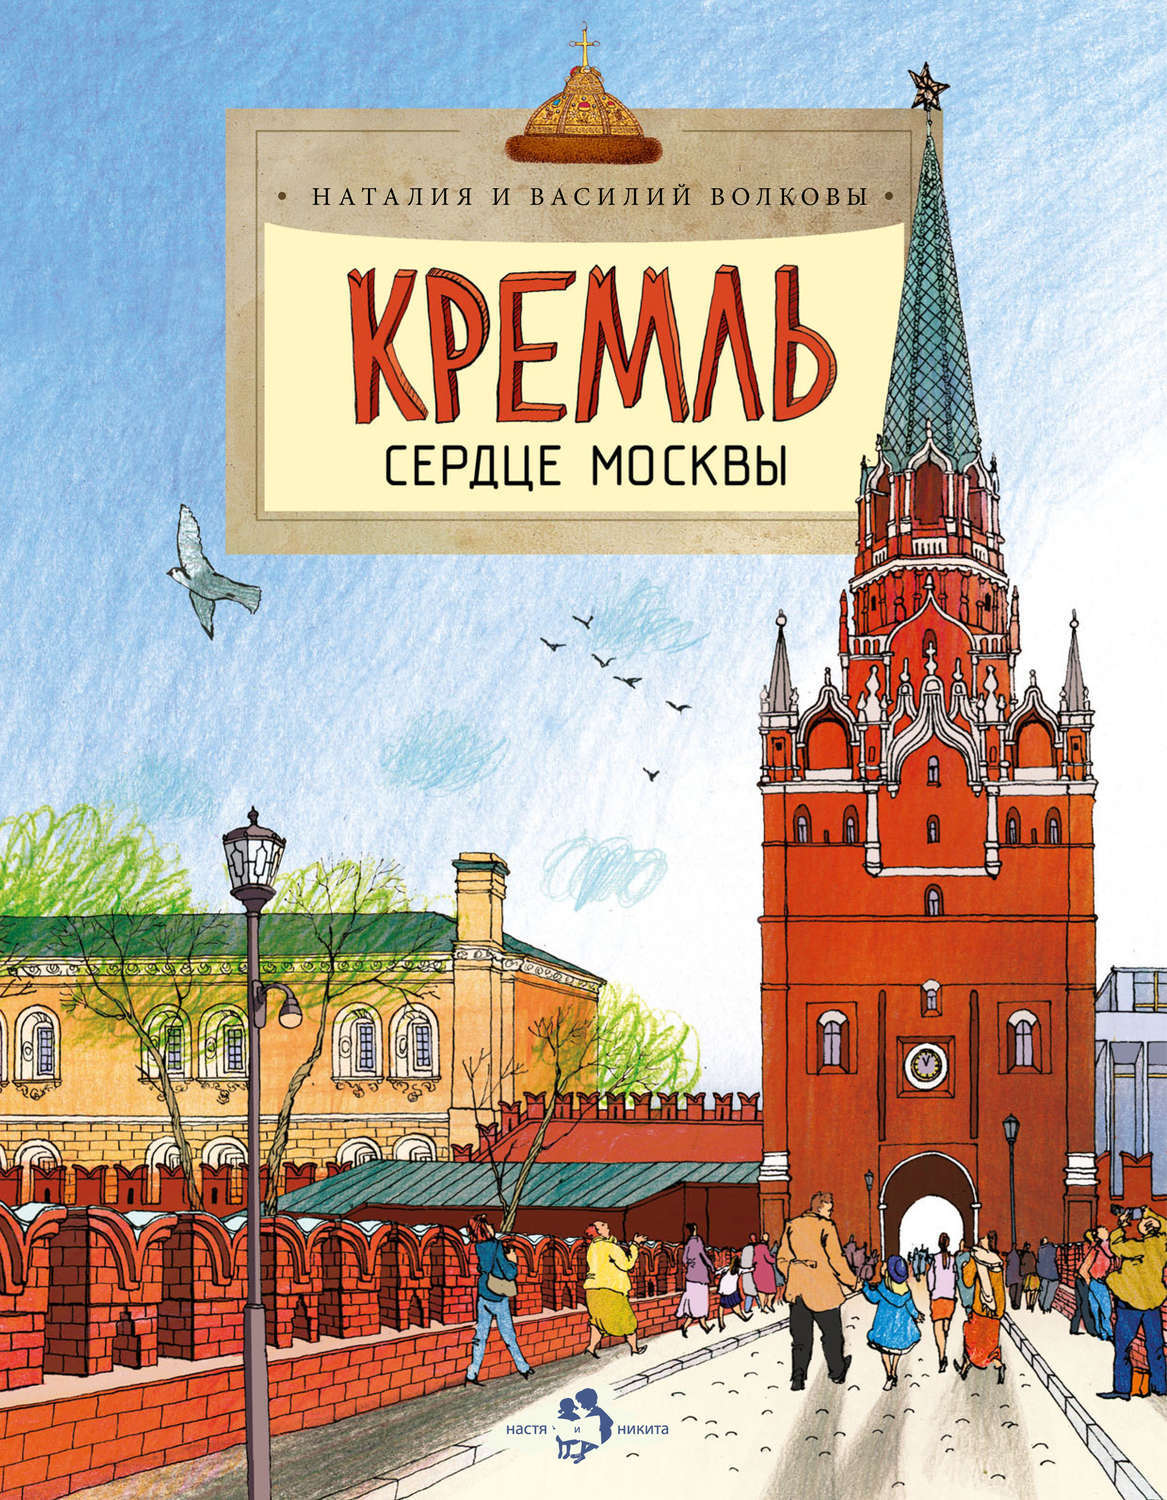 Где Купить Детские Книги Москве